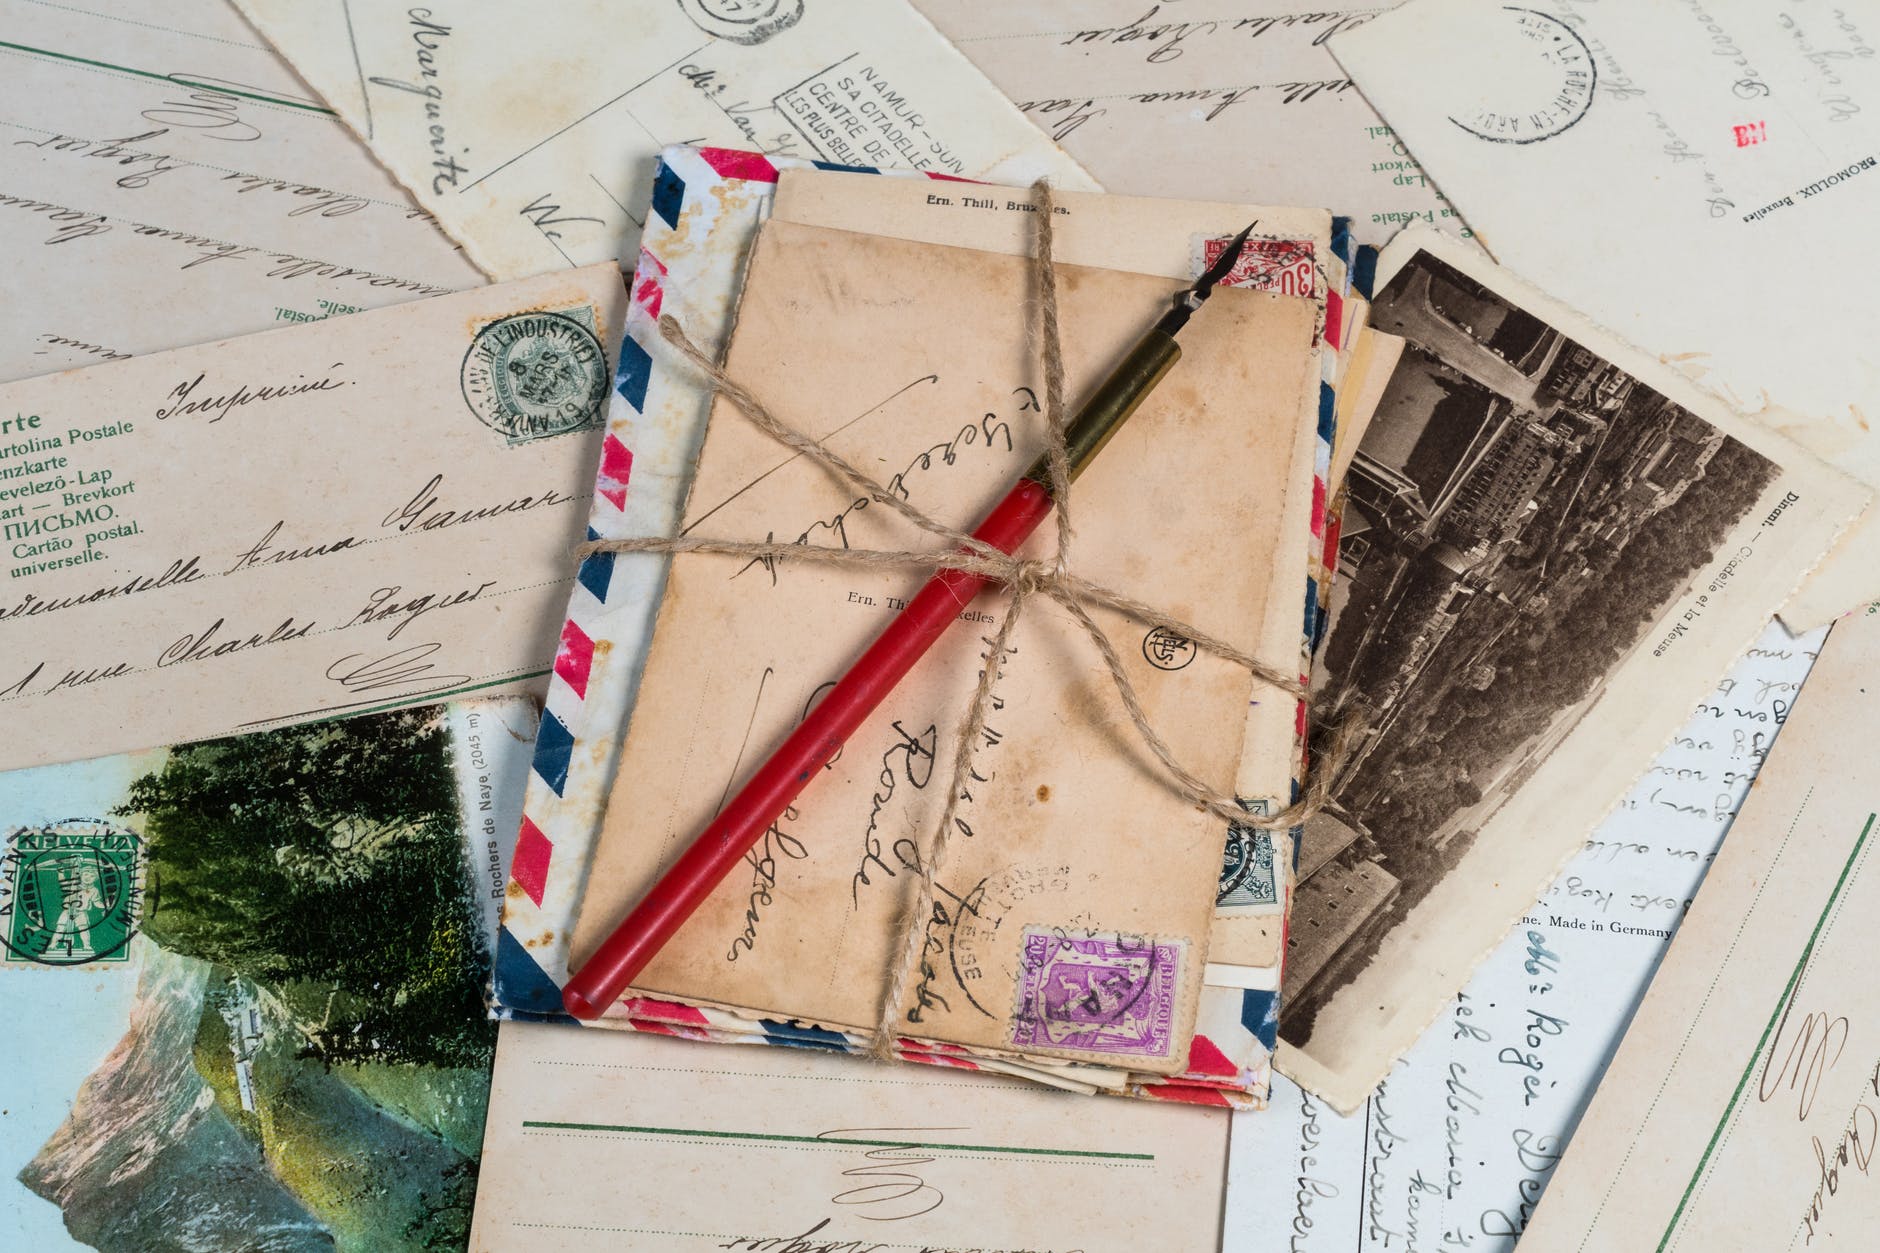 letter envelopes
postcrossing